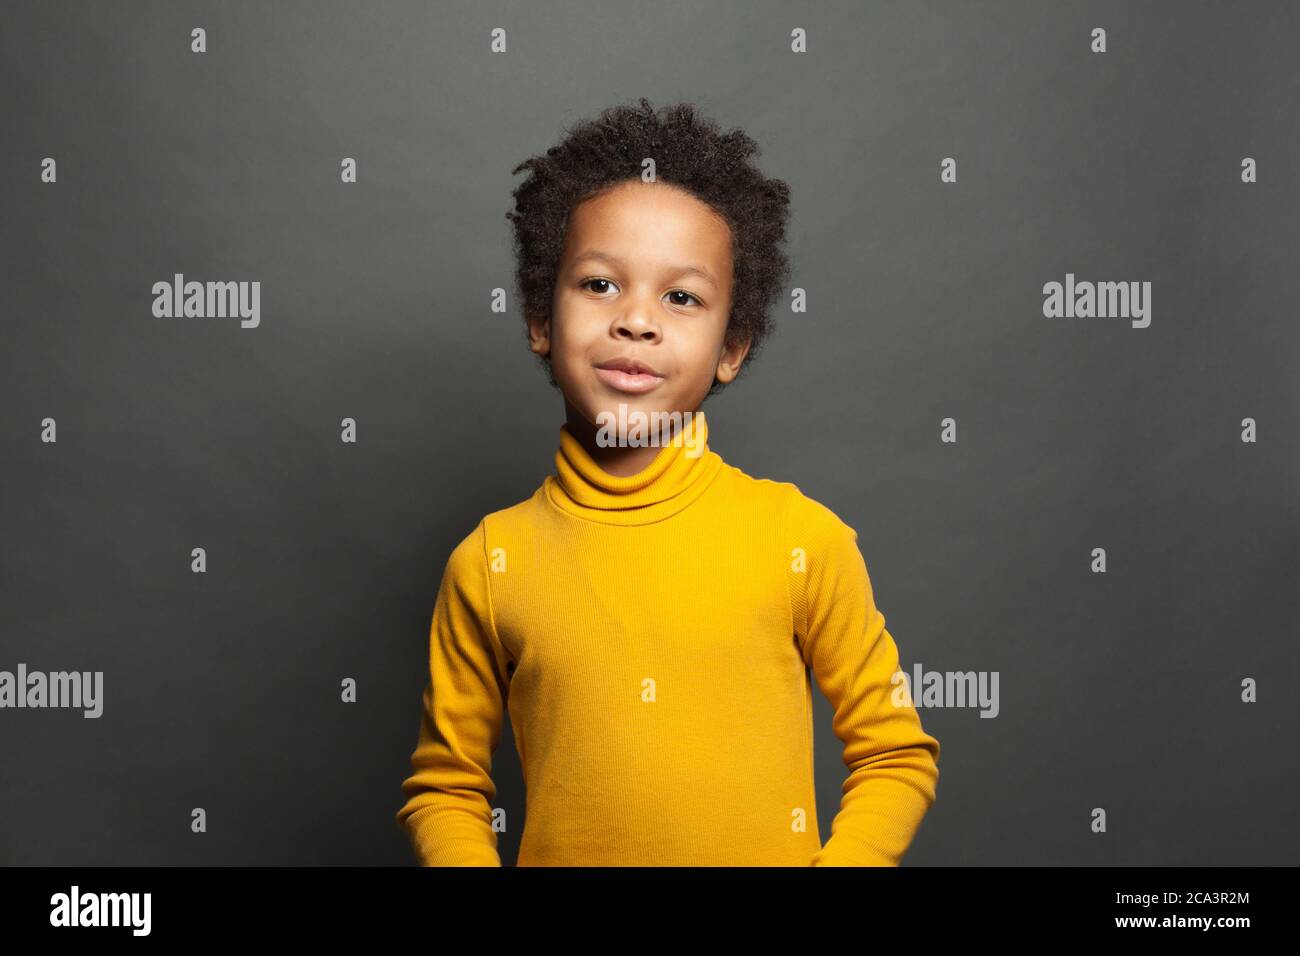 Curious black child boy ob black portrait Stock Photo